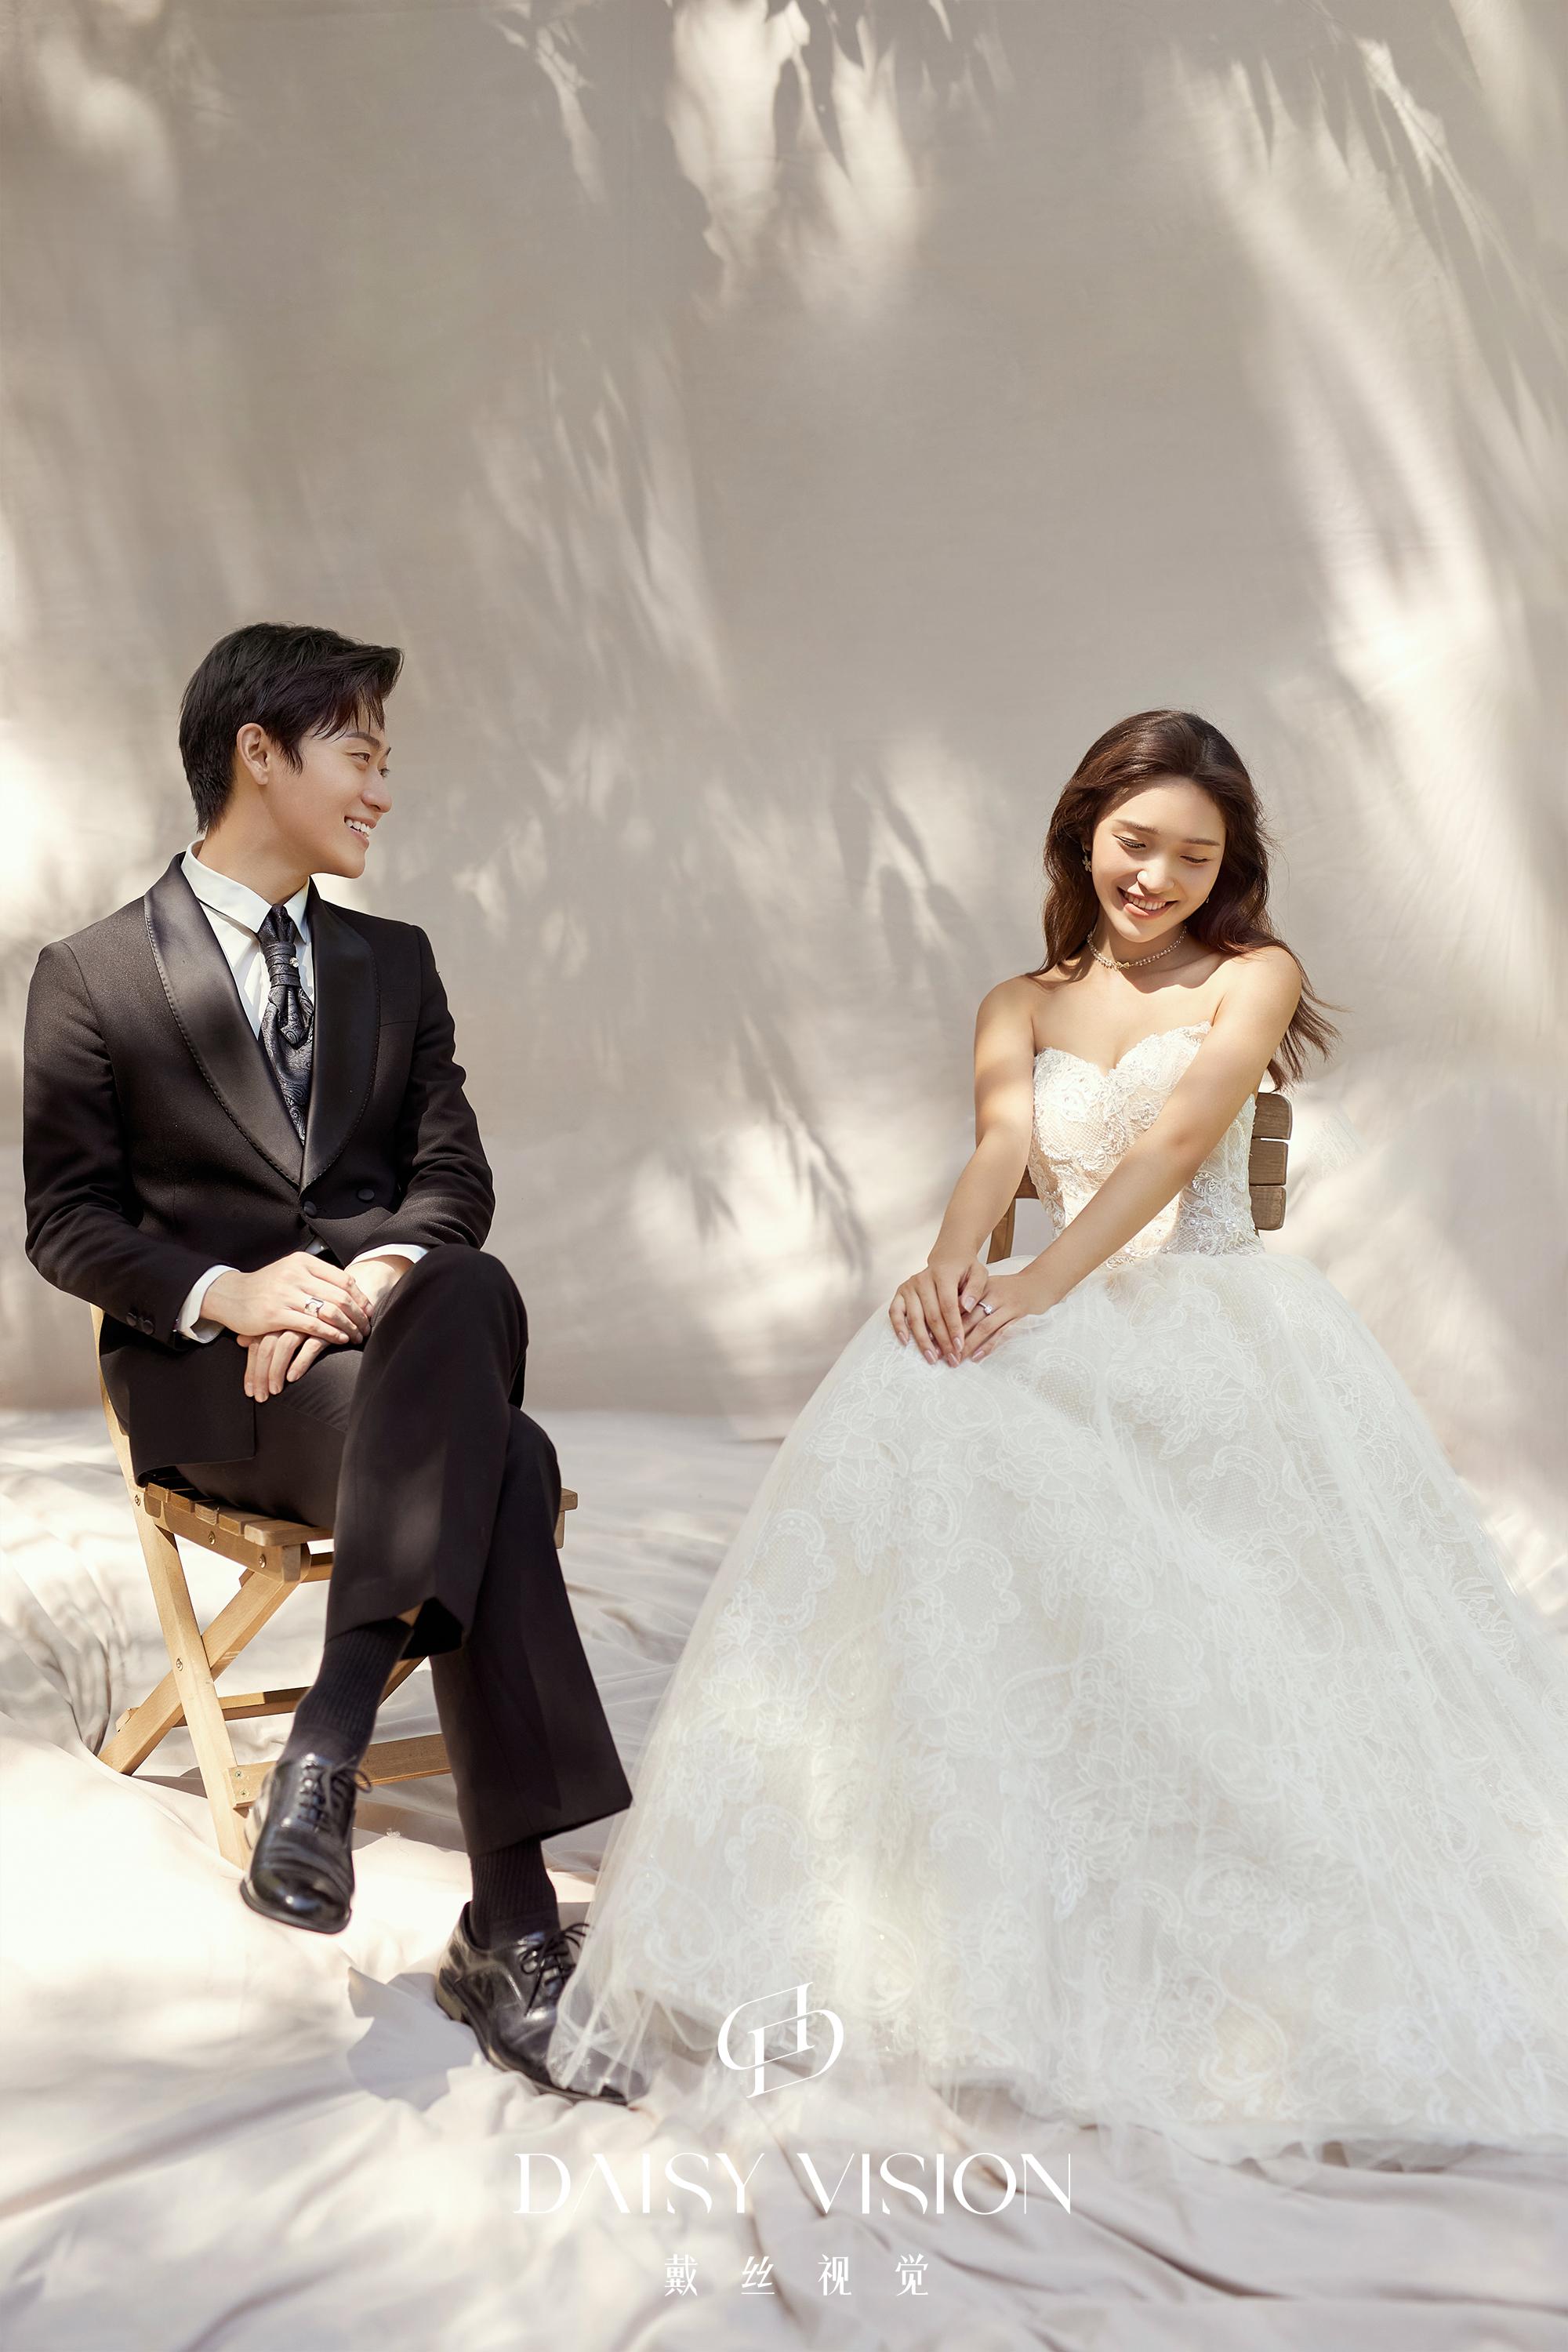 当韩式婚纱照遇上极简风,把韩式的柔美简洁表现的淋漓尽致,不需要任何